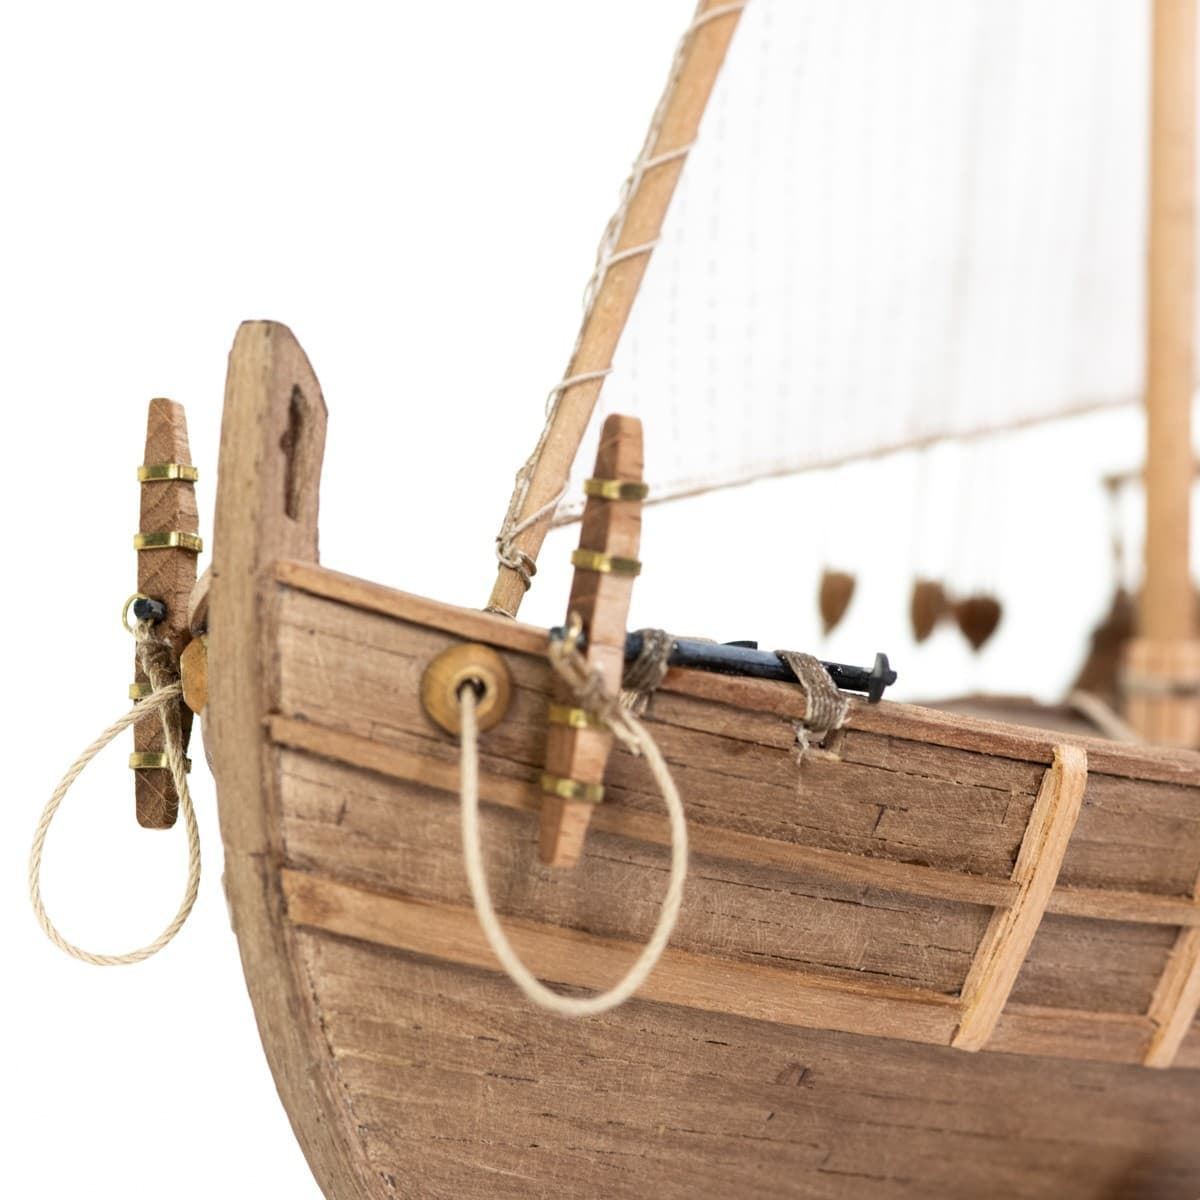 Maqueta barco de madera: Carabela Niña - Imagen 5